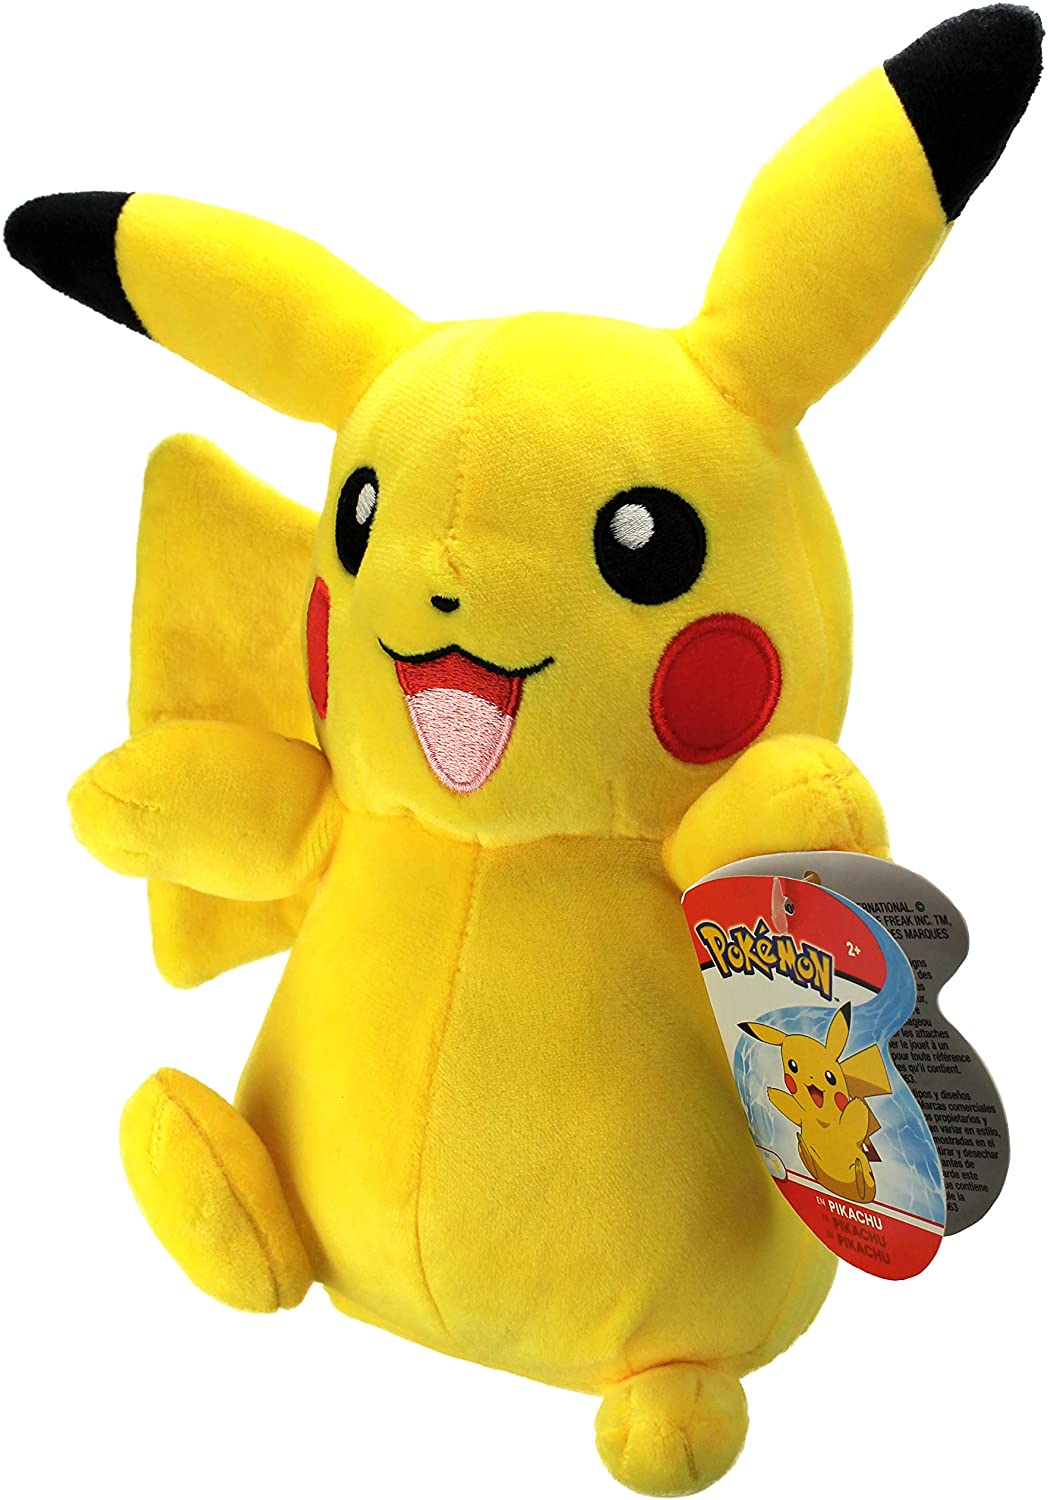 Pokemon 674 95211 20,3 cm großes Plüsch-Pikachu, gelb